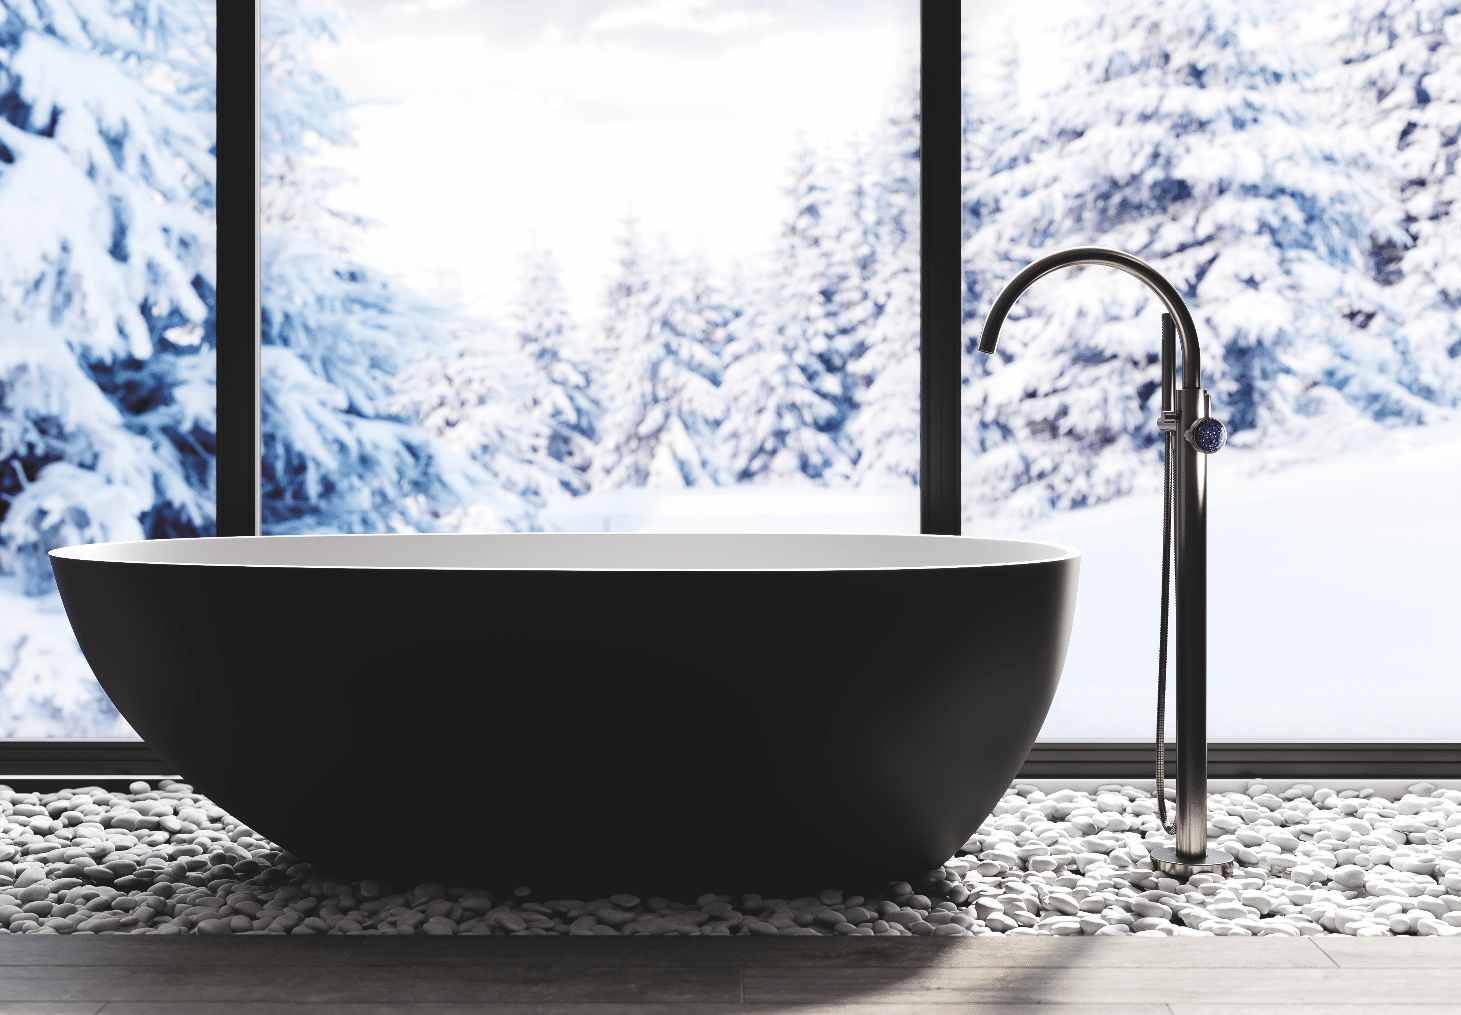 Moderne Eleganz verbindet sich mit Purismus und Elementen von Industrial Style. Die frei stehenden Armaturen für Waschtisch und Badewanne kommen als Designobjekte in der gegebenen Badarchitektur mit Freiraum besonders schön zur Geltung.